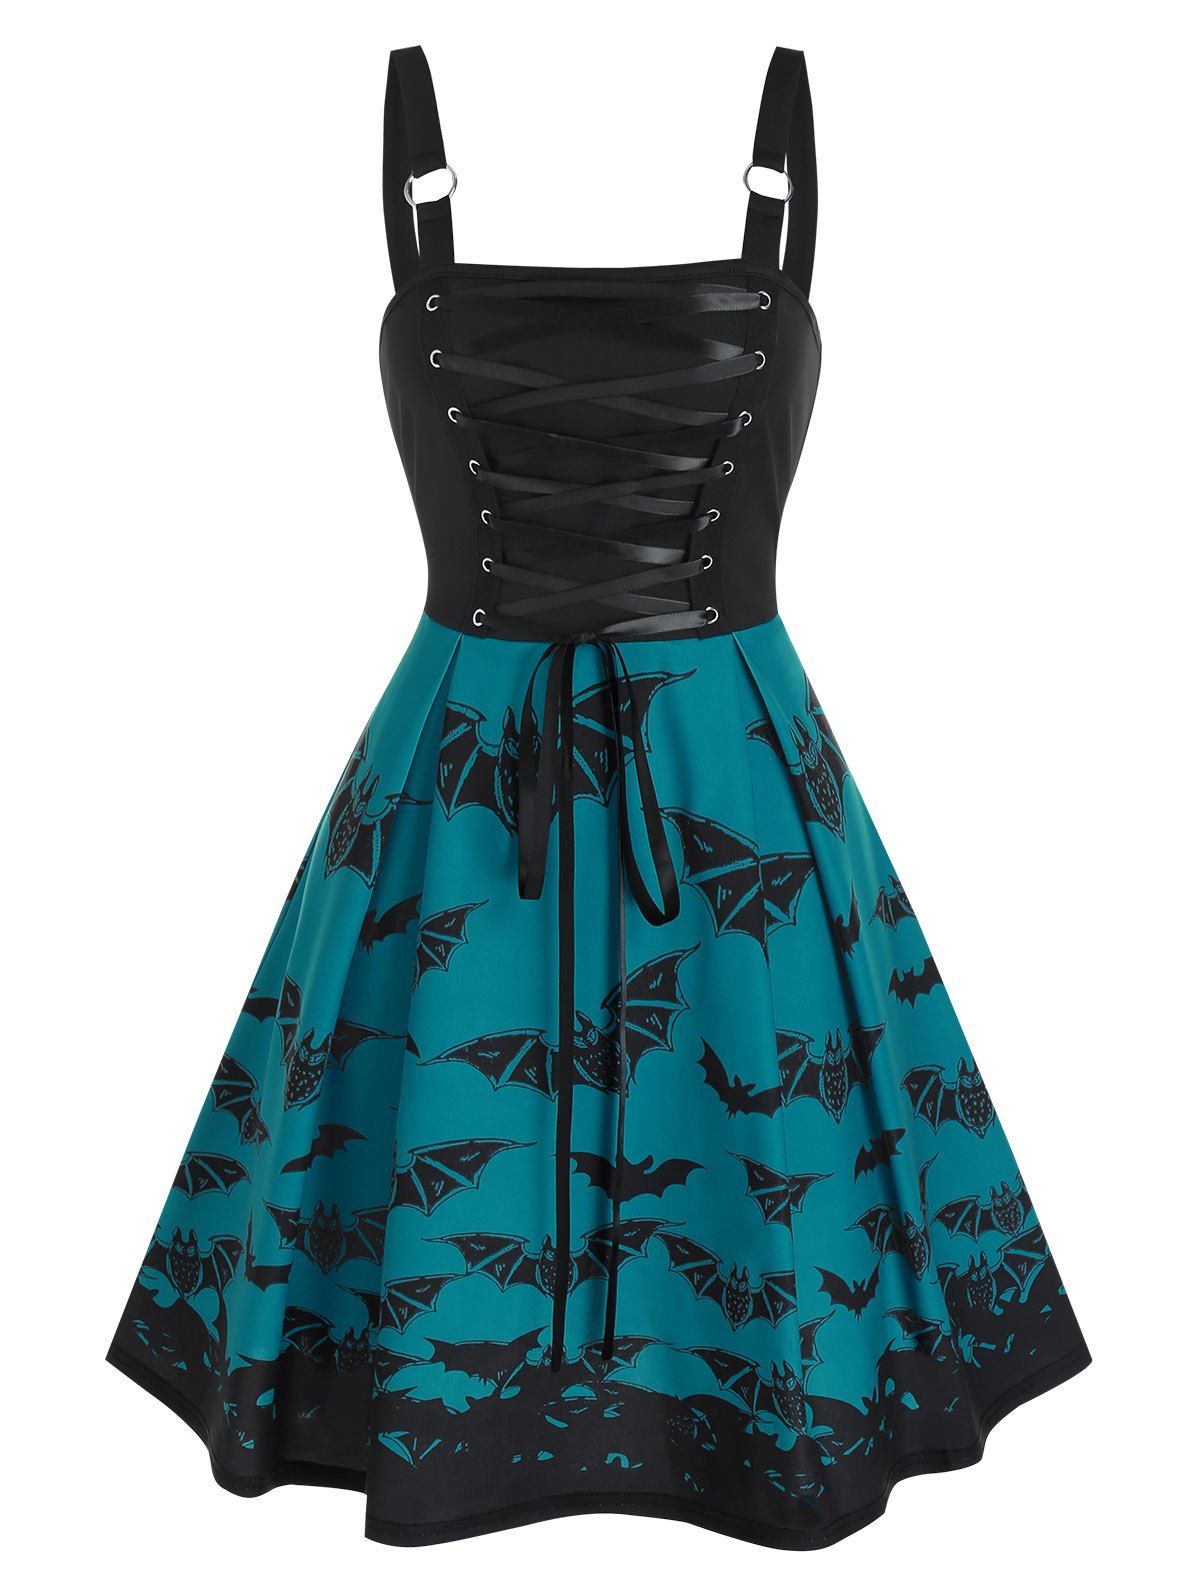 Lace Up Bat Print High Waist Cami A Line Dress - BLACK S